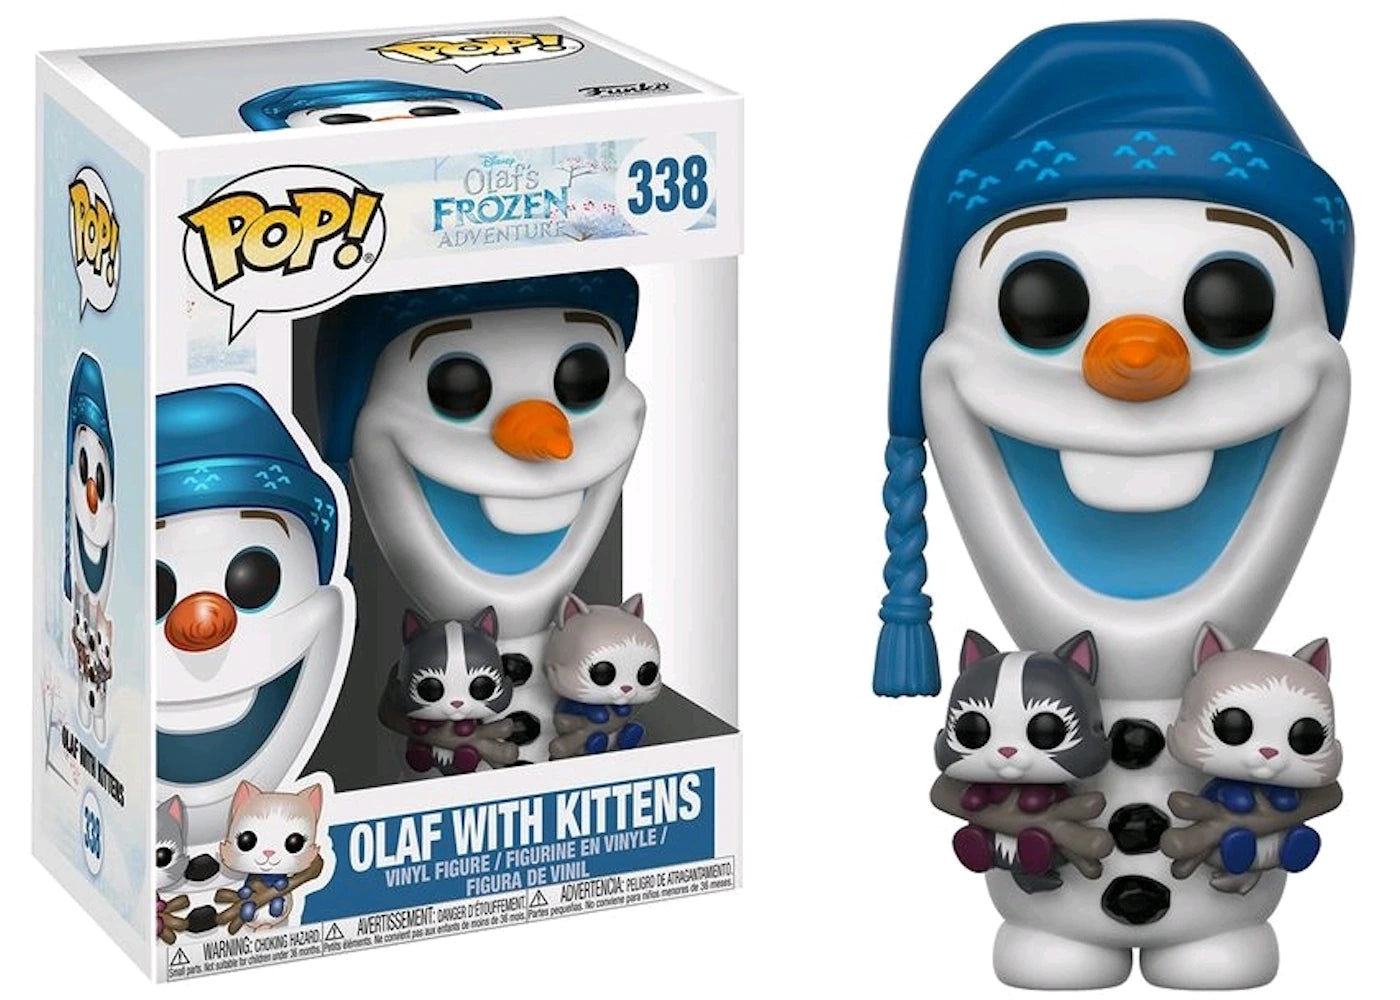 FROZEN: OLAF WITH KITTENS #338 - FUNKO POP!